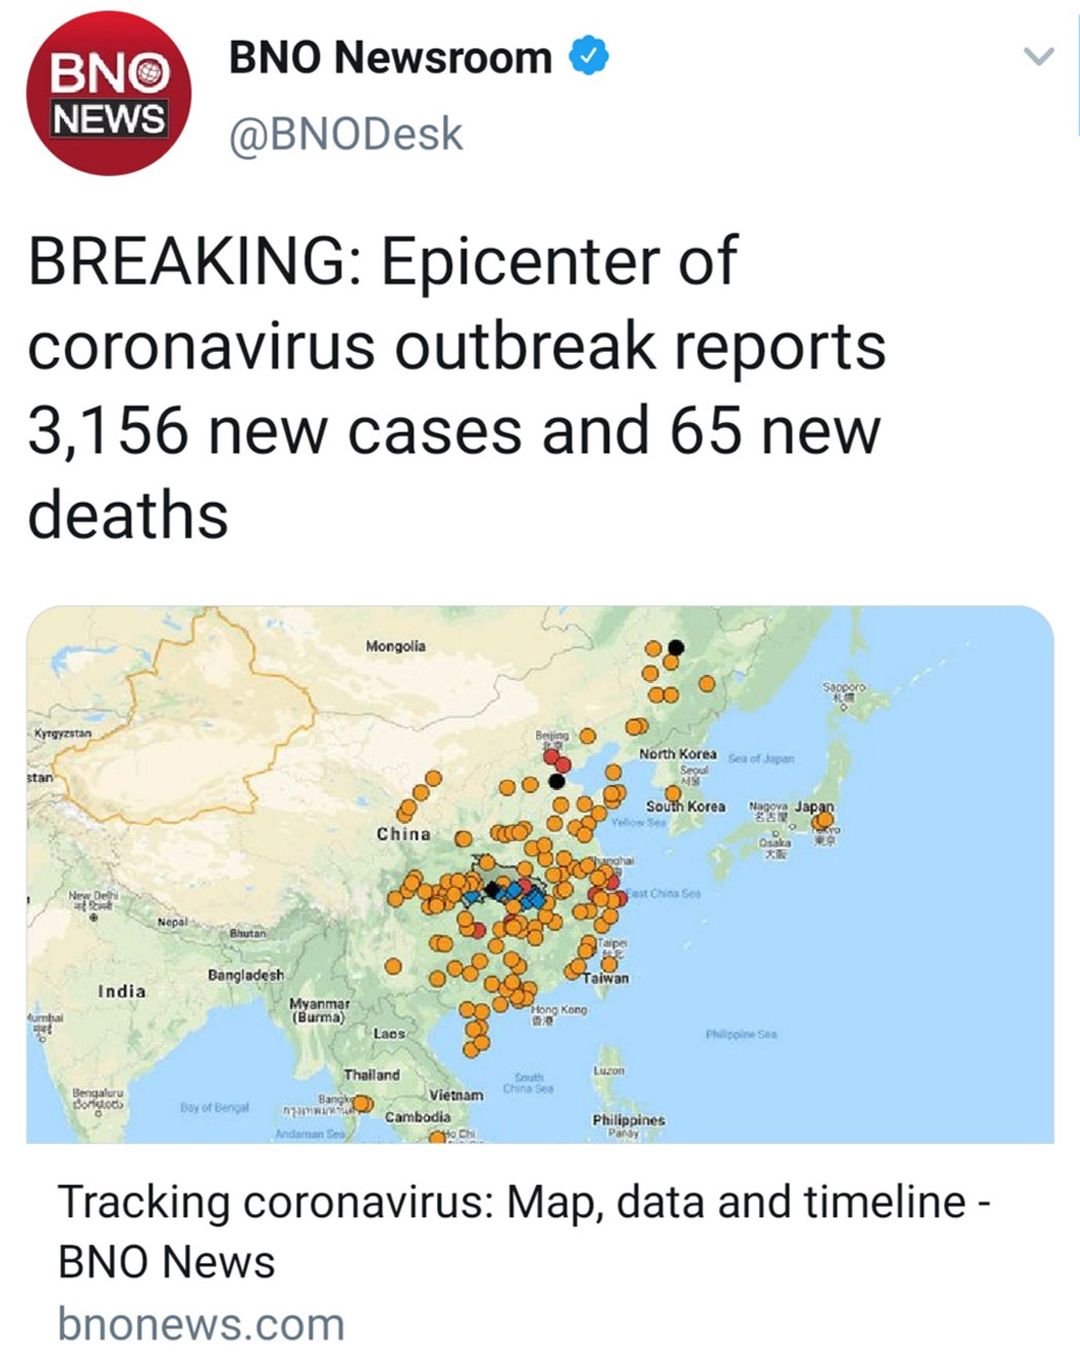 Tracking #Coronavirus